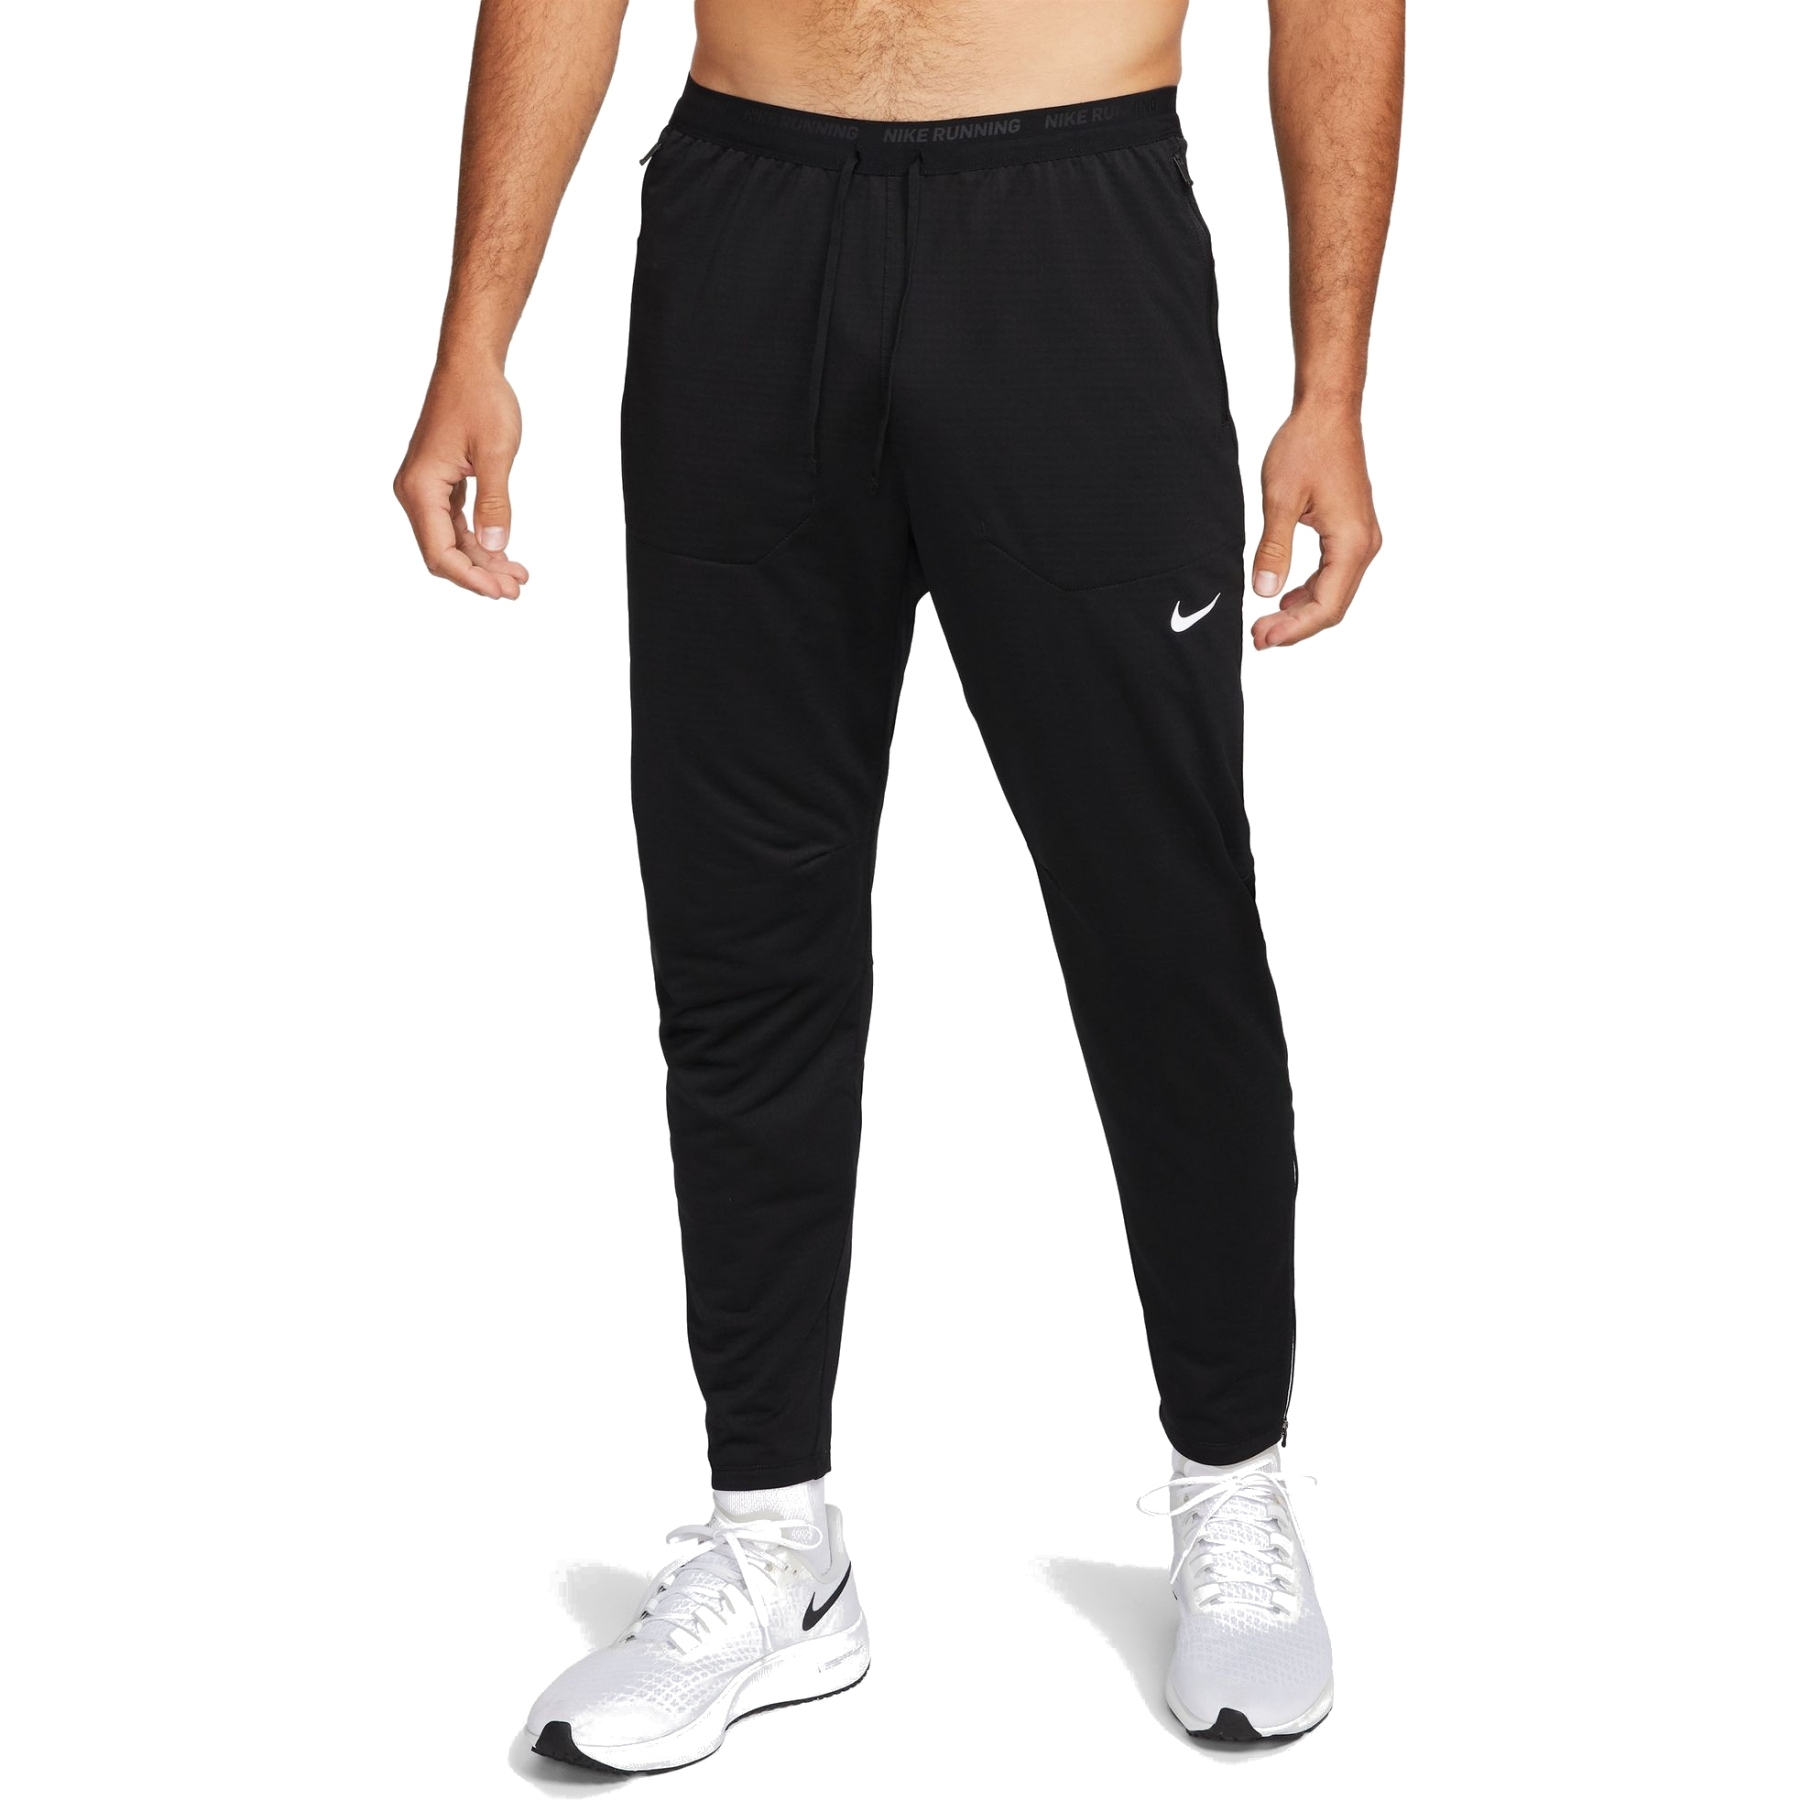 Immagine di Nike Pantaloni da corsa Uomo - Dri-FIT Phenom Elite - black/reflective silver DQ4740-010